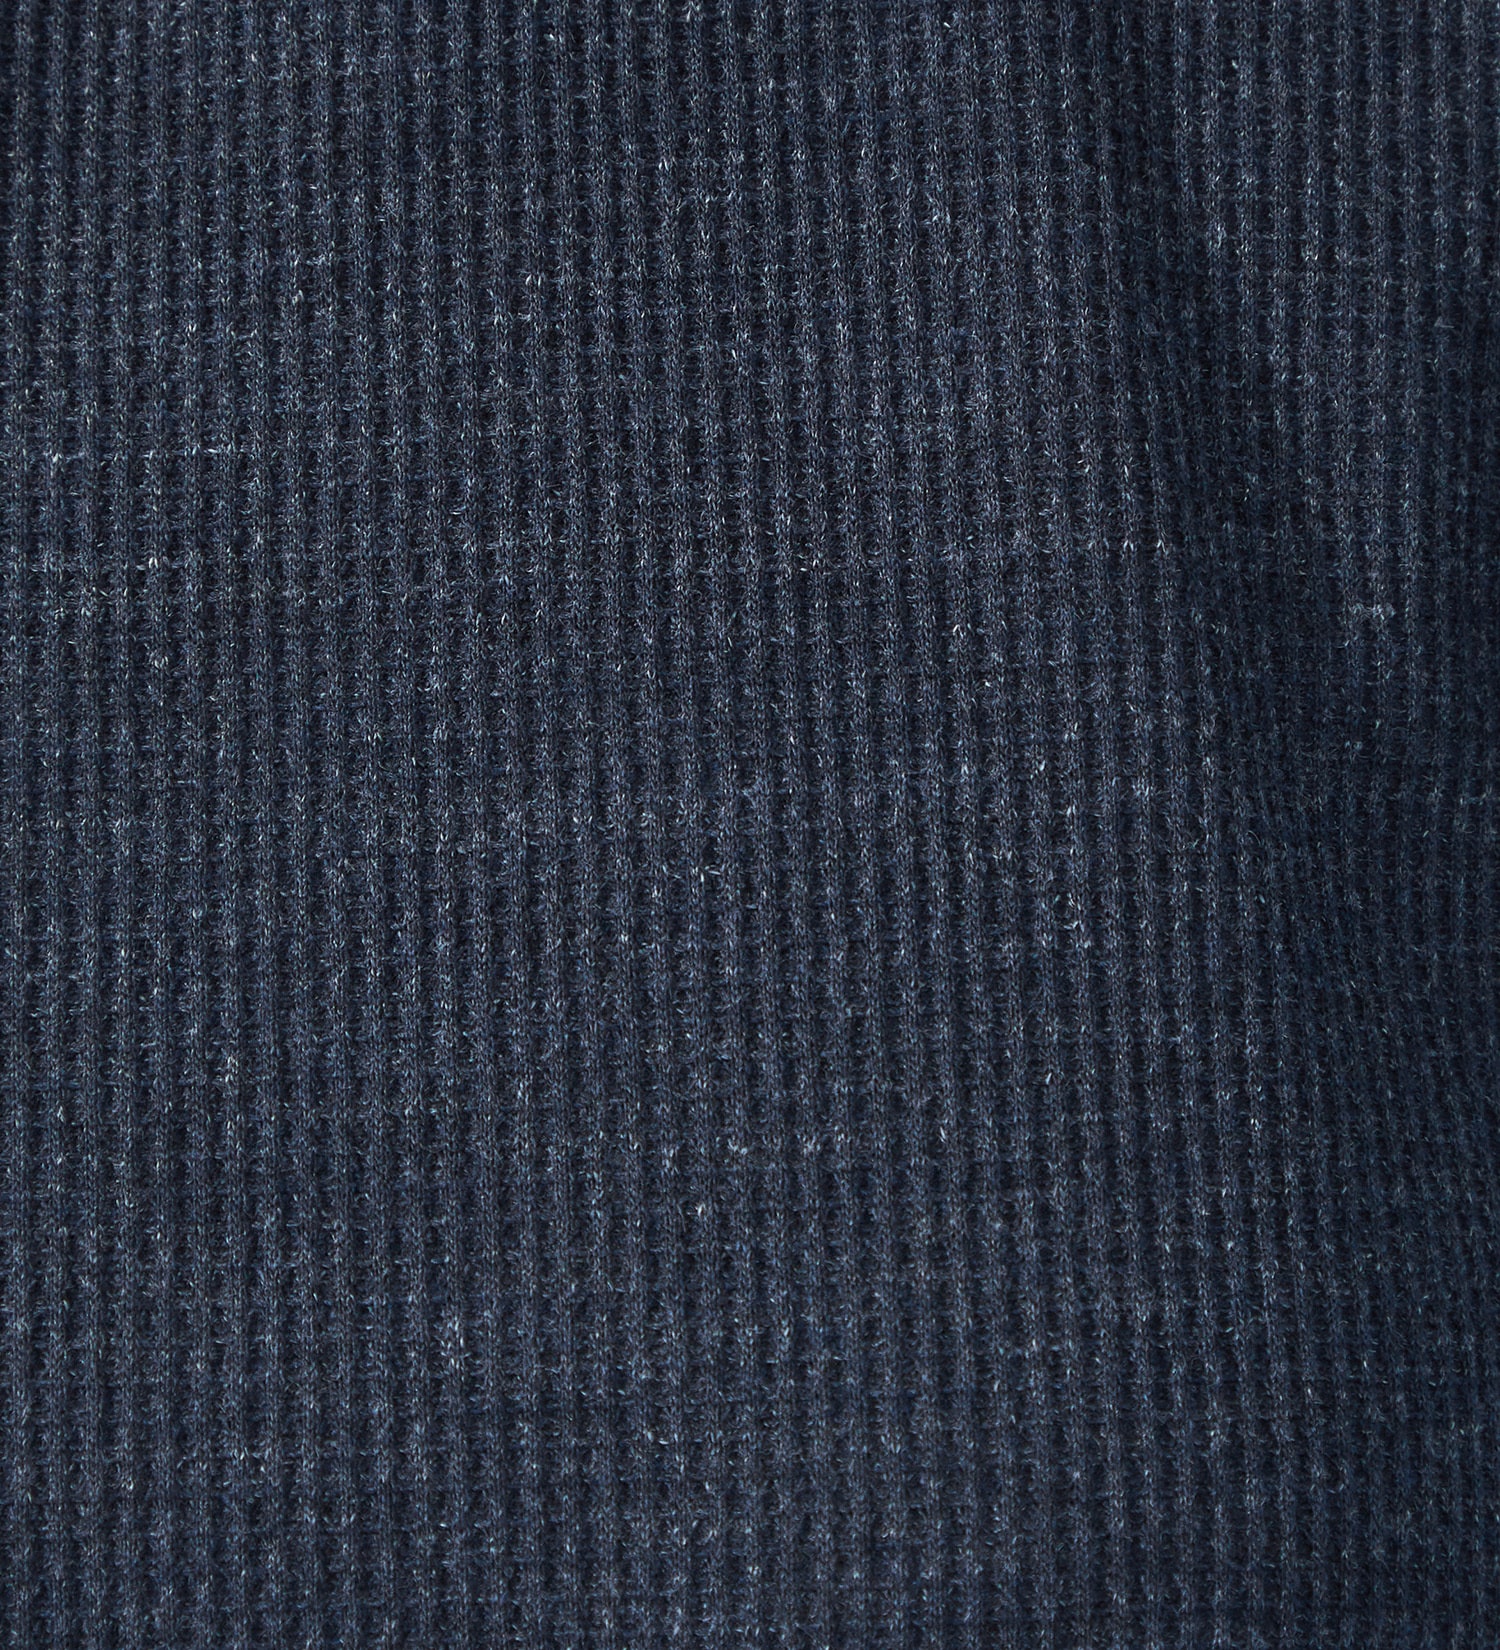 SOMETHING(サムシング)のSOMETHING COOL バックタック半袖Tシャツ【涼】|トップス/Tシャツ/カットソー/レディース|ダークブルー